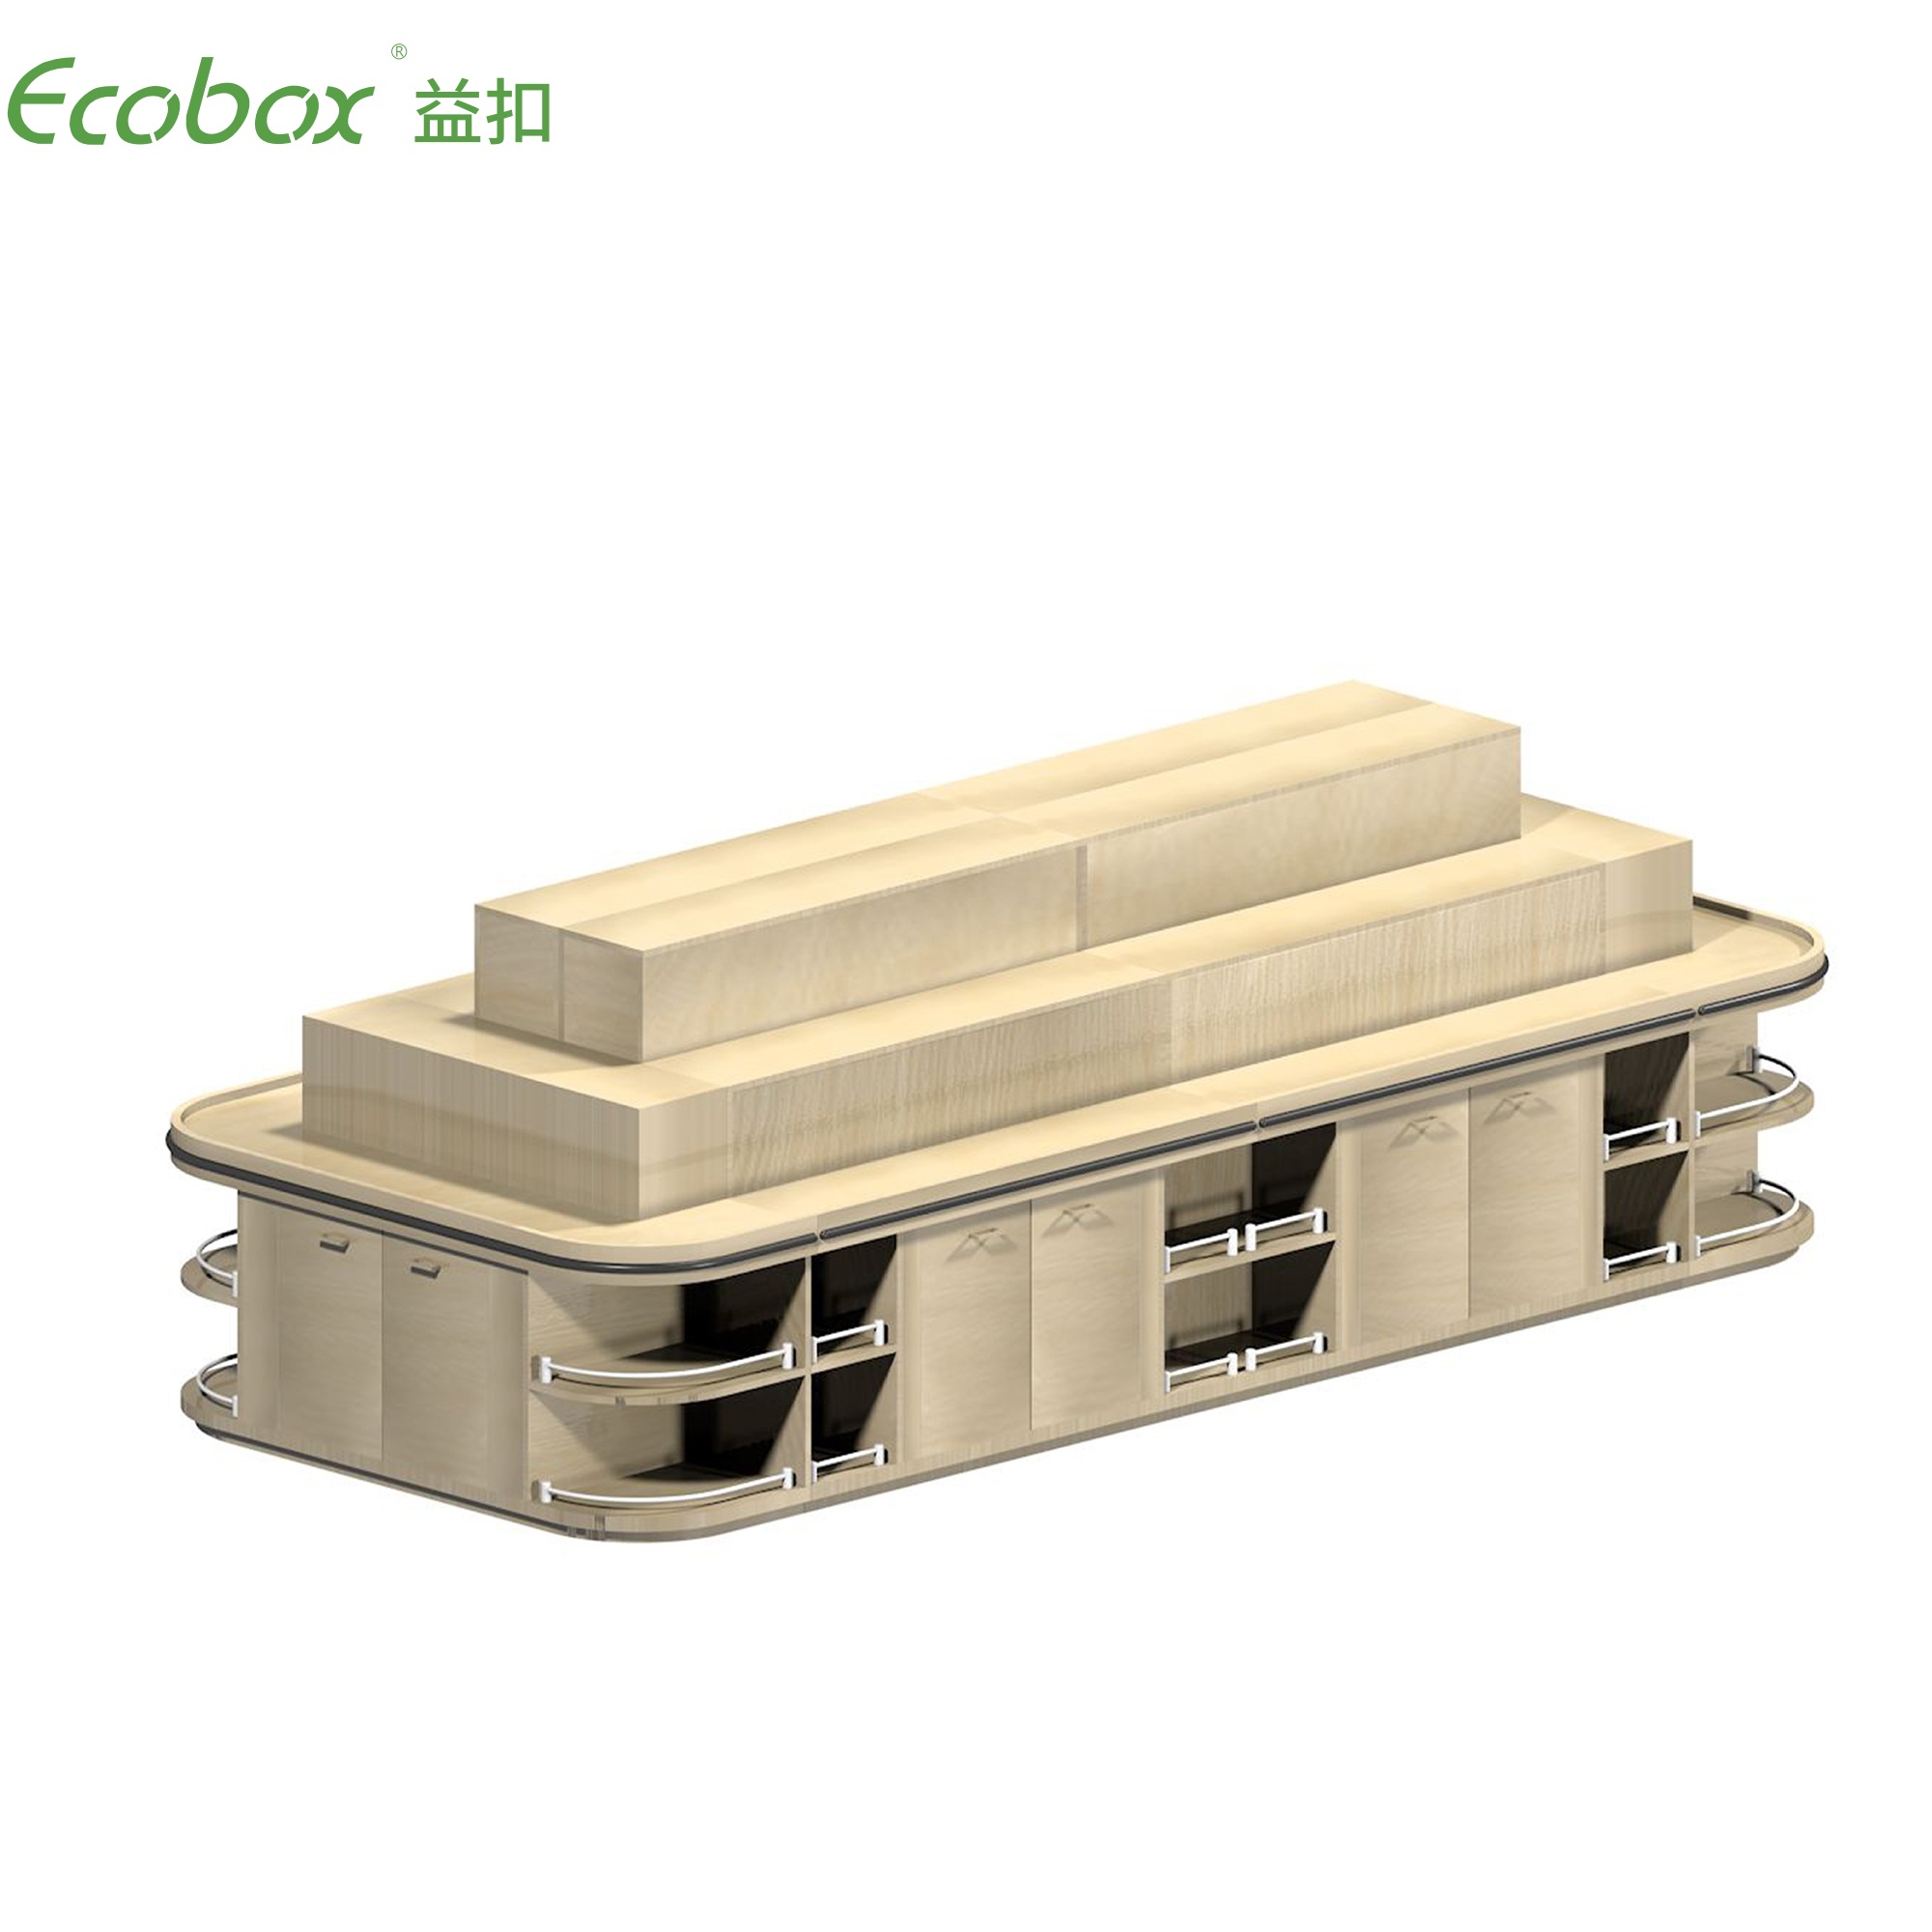 Ecobox G009 Supermarkt-Großlebensmitteldisplays mit Ecobox-Supermarktbehältern